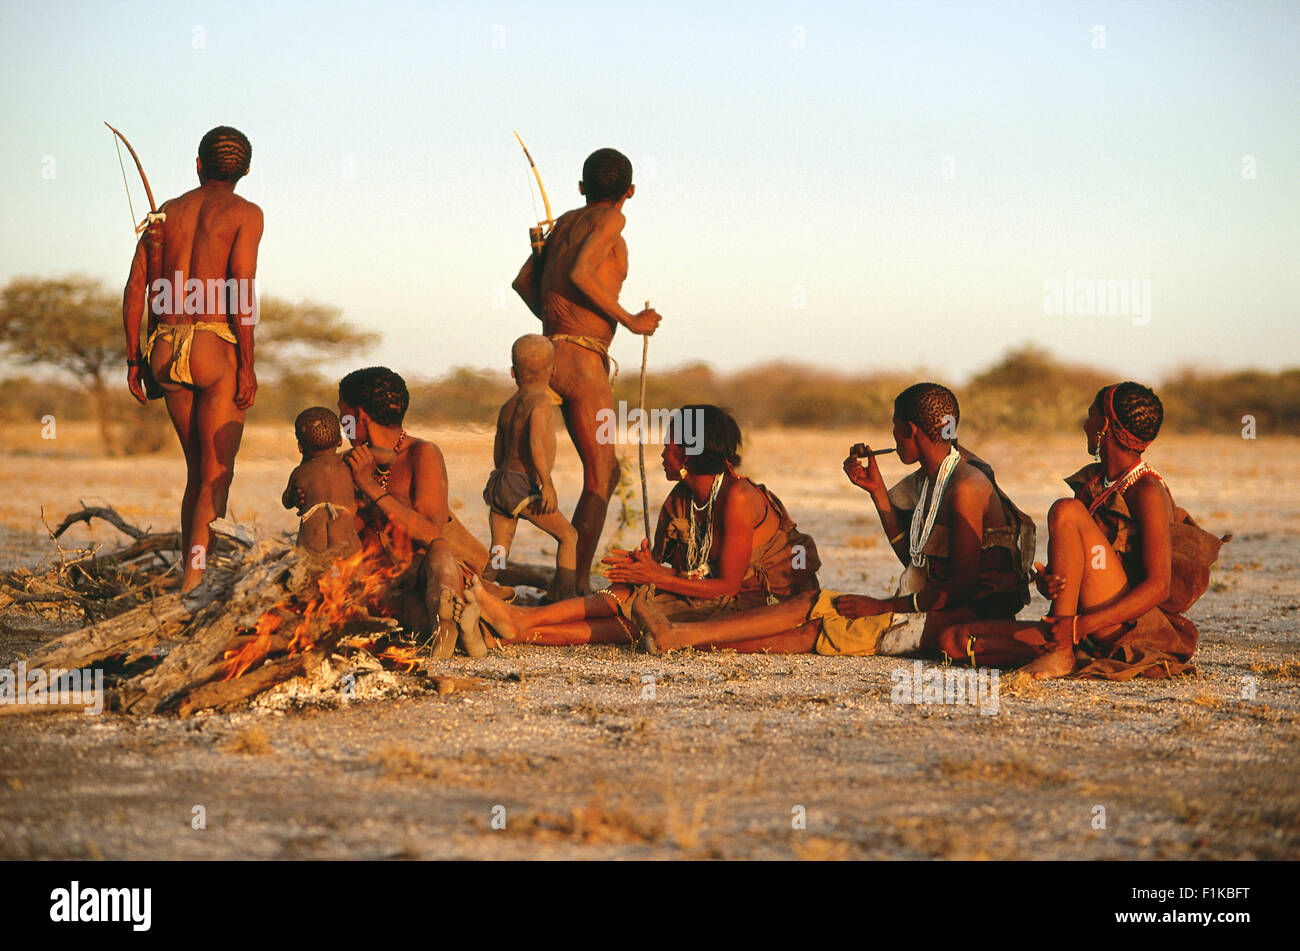 Bushman tribe around fire. Botswana, Africa Stock Photo